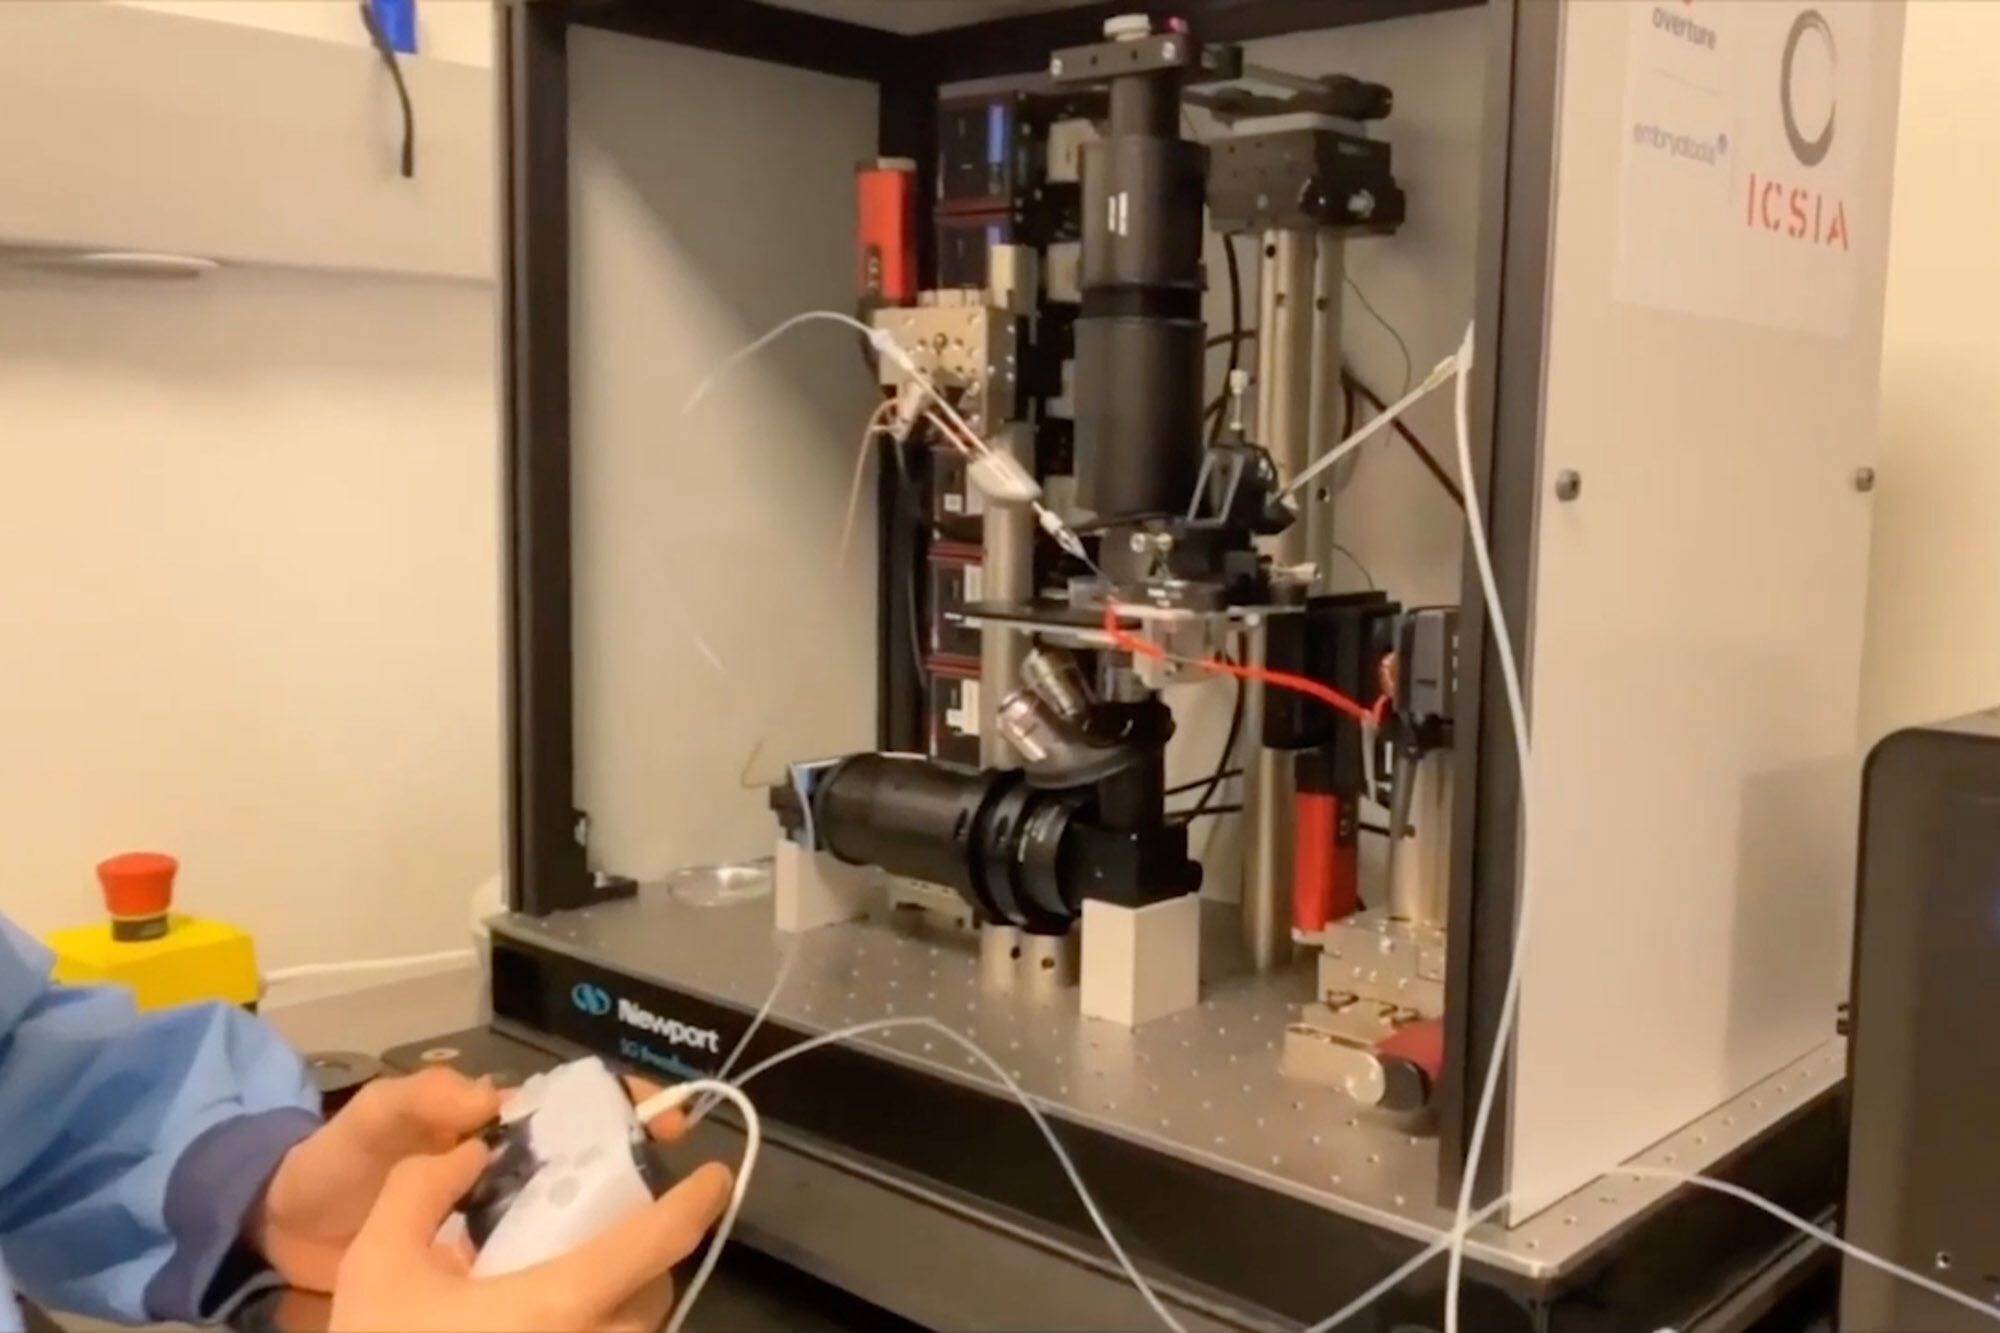 Fertilisation of an egg using a robot controlled by a DualSense controller.